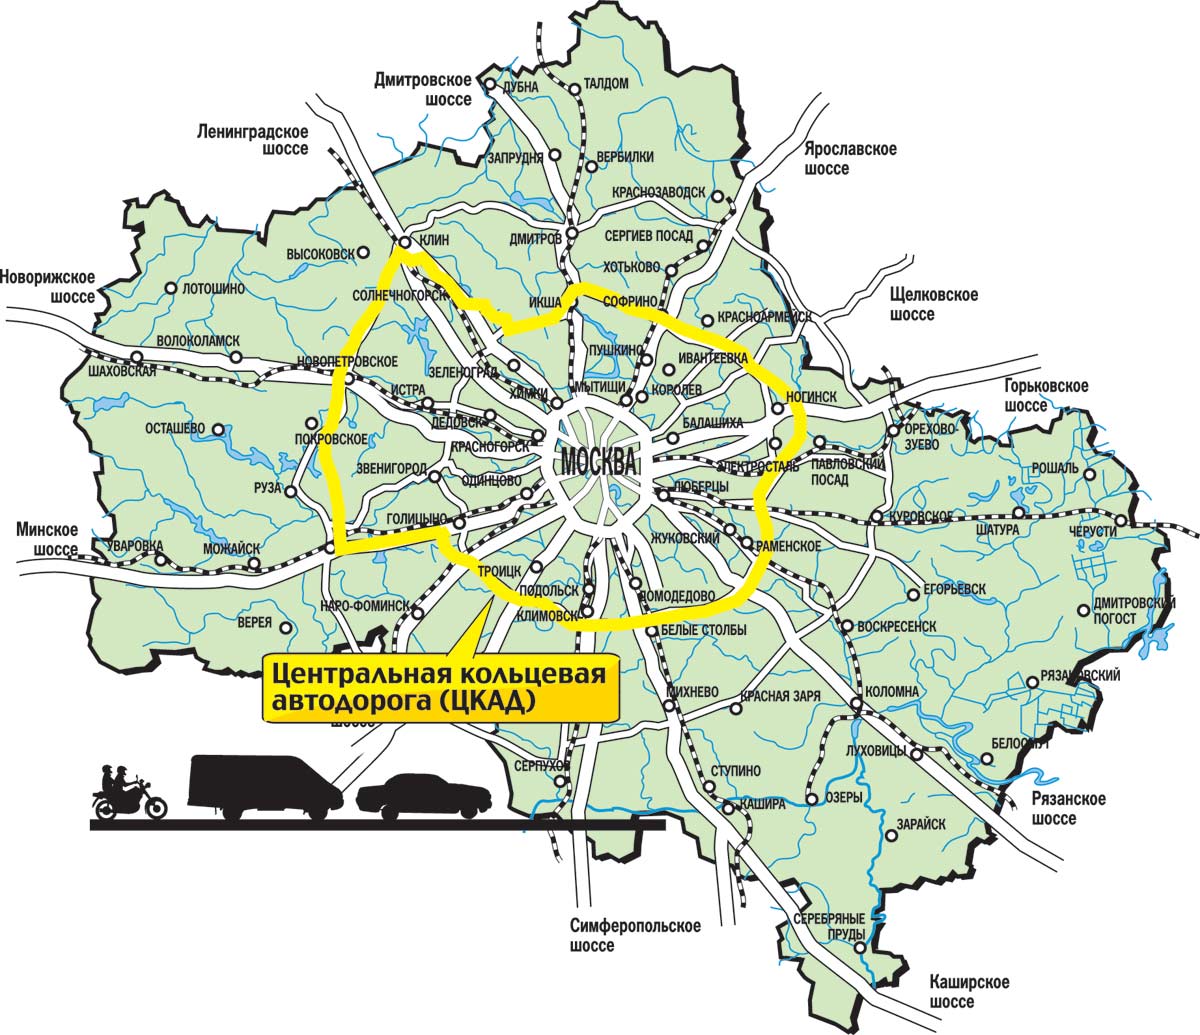 Карта дороги ЦКАД Московской области